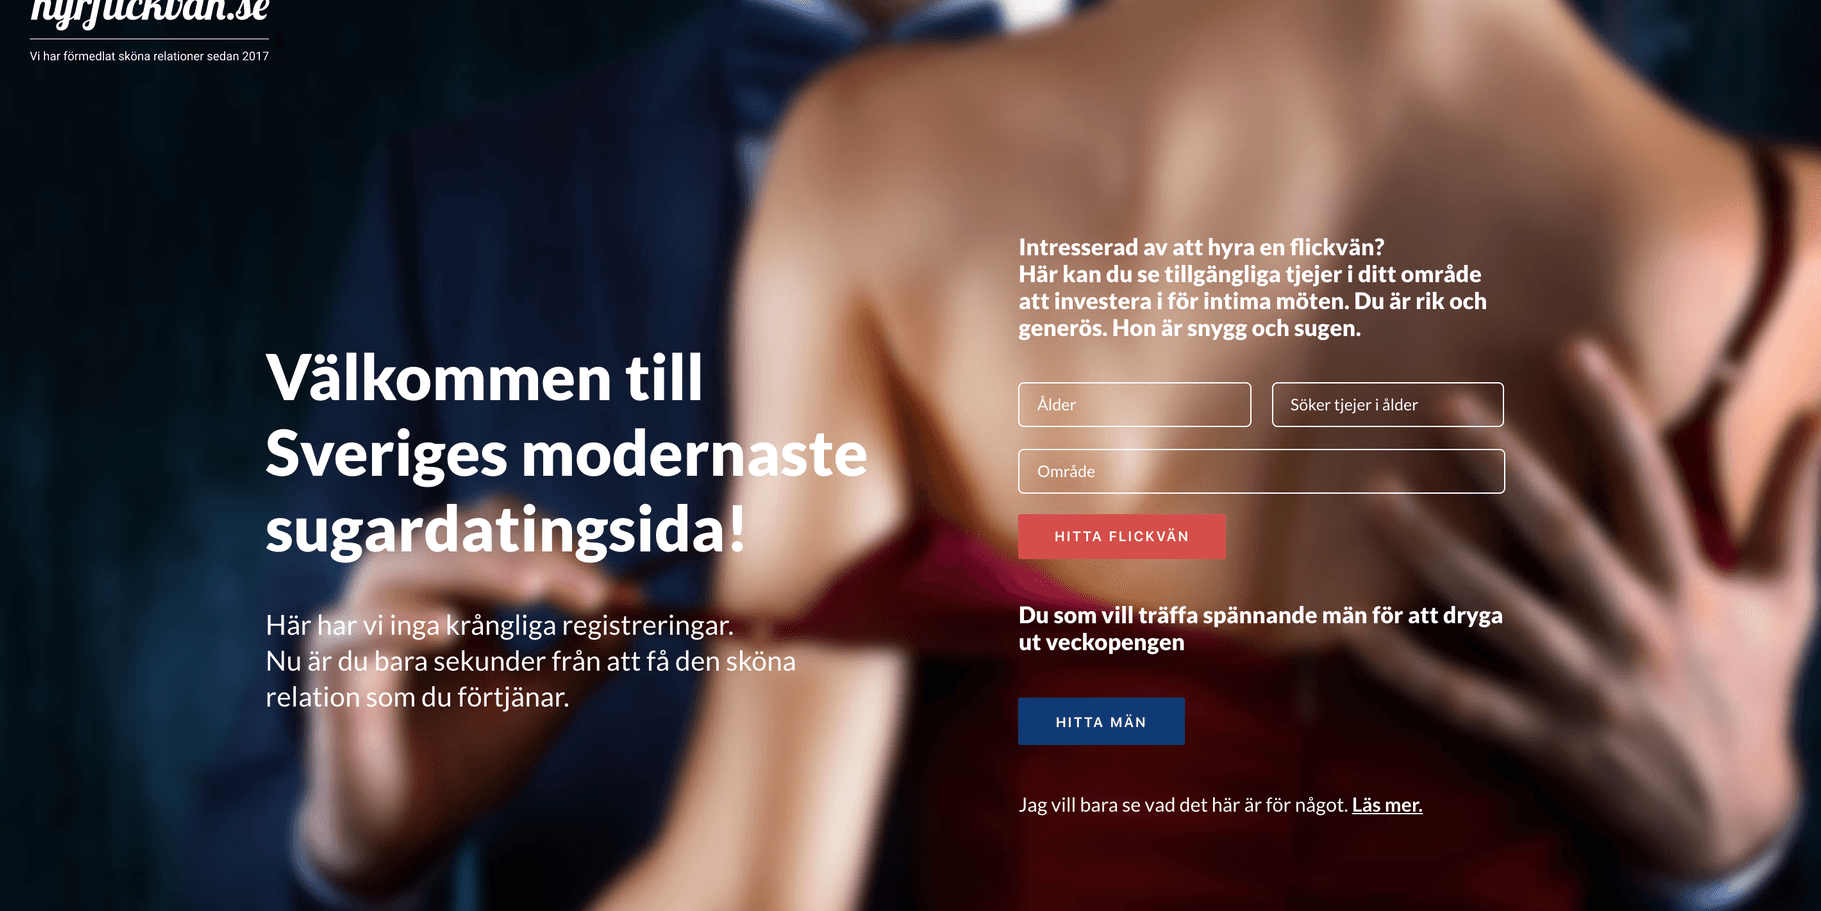 Sidan är i själva verket en del av en kampanj mot sexköp från antitrafficking-organisationerna Real Stars och Child10 med syfte att synliggöra att sugardating är en plattform för sexköp och att det är ett av de vanligaste sätten i Sverige att locka in unga, framförallt tjejer, i prostitution, skriver debattörerna. 